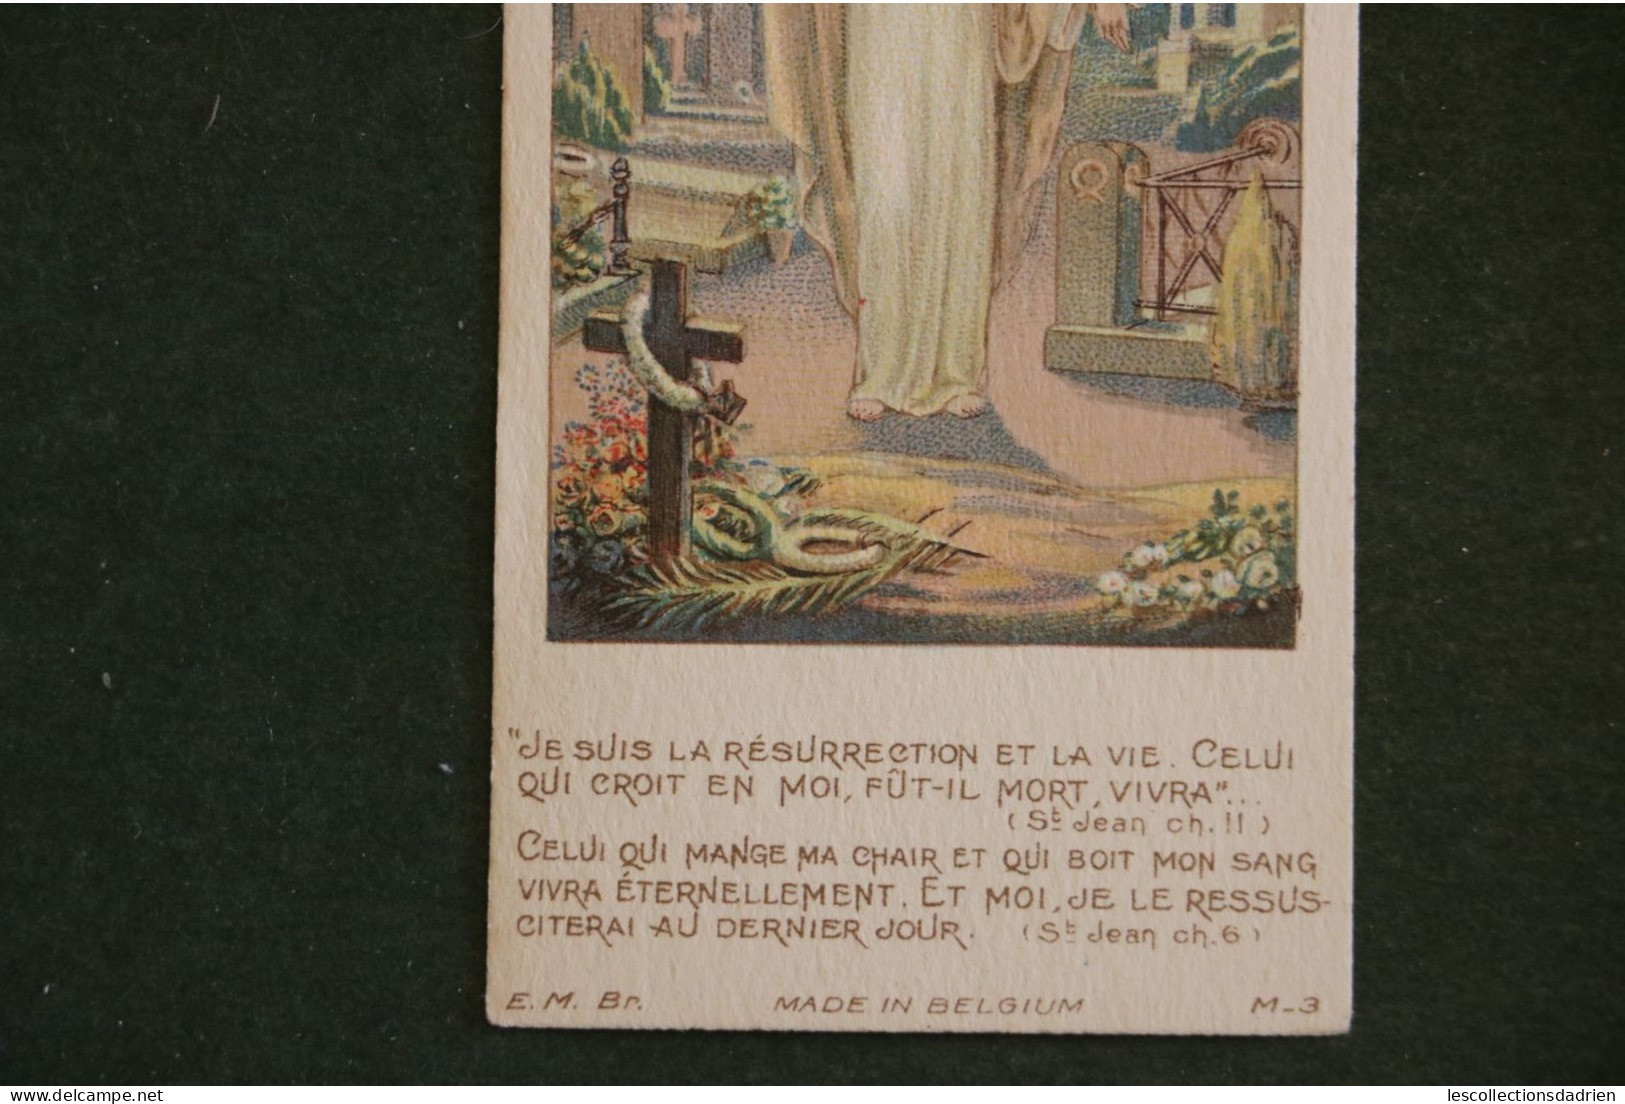 Image Religieuse Christ Dans Un Cimetière - Graveyard Holy Card - Santini